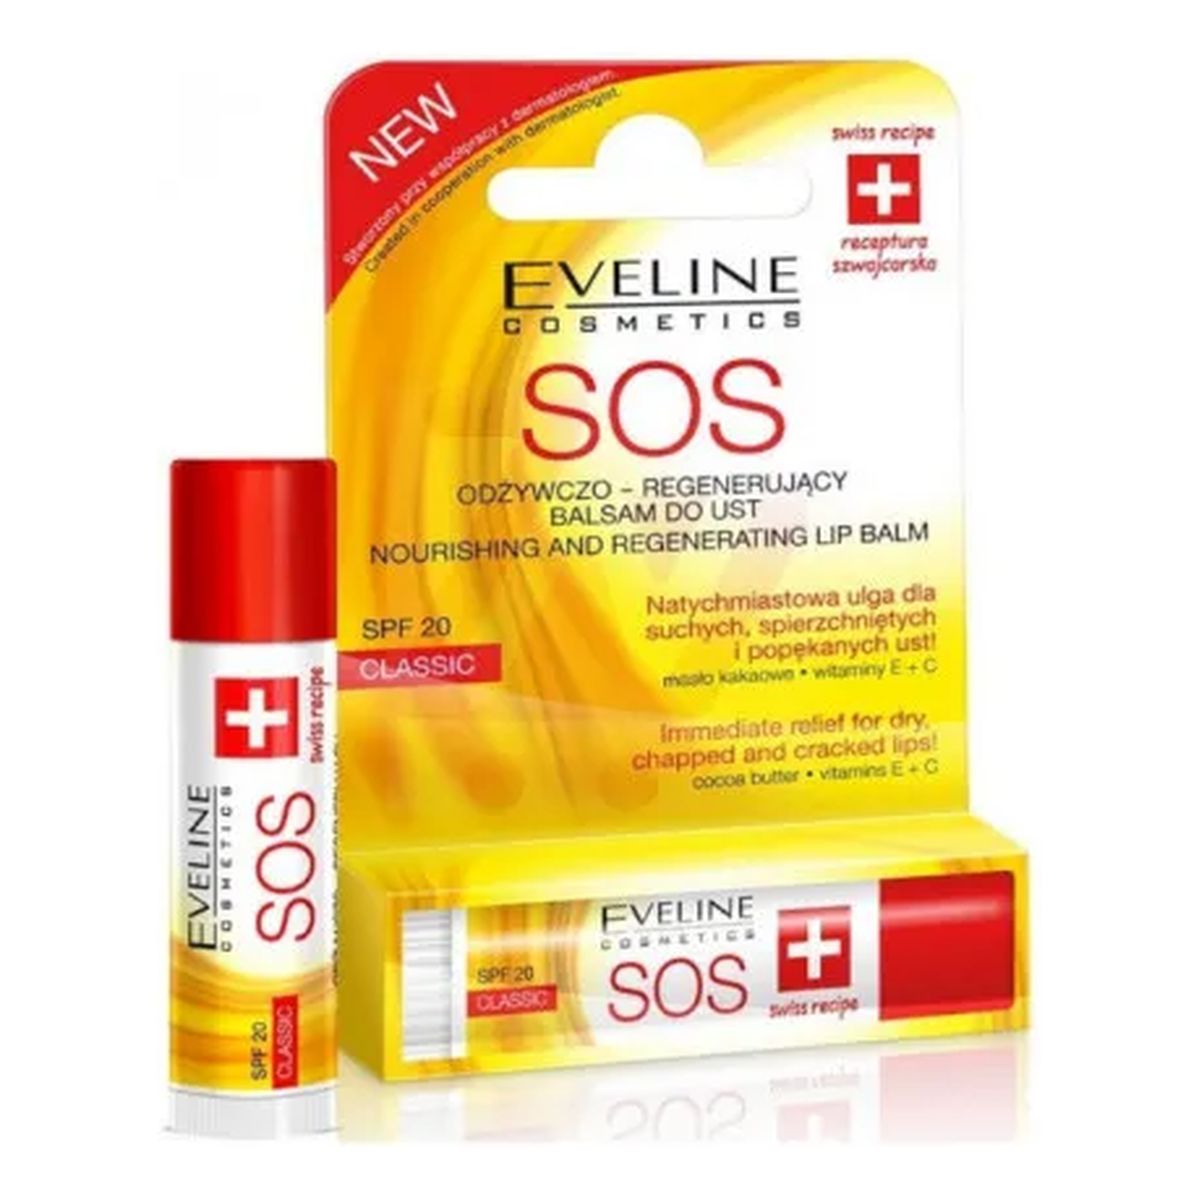 Eveline SOS Argan Oil Odżywczo – Regenerujący Balsam Do Ust Classic